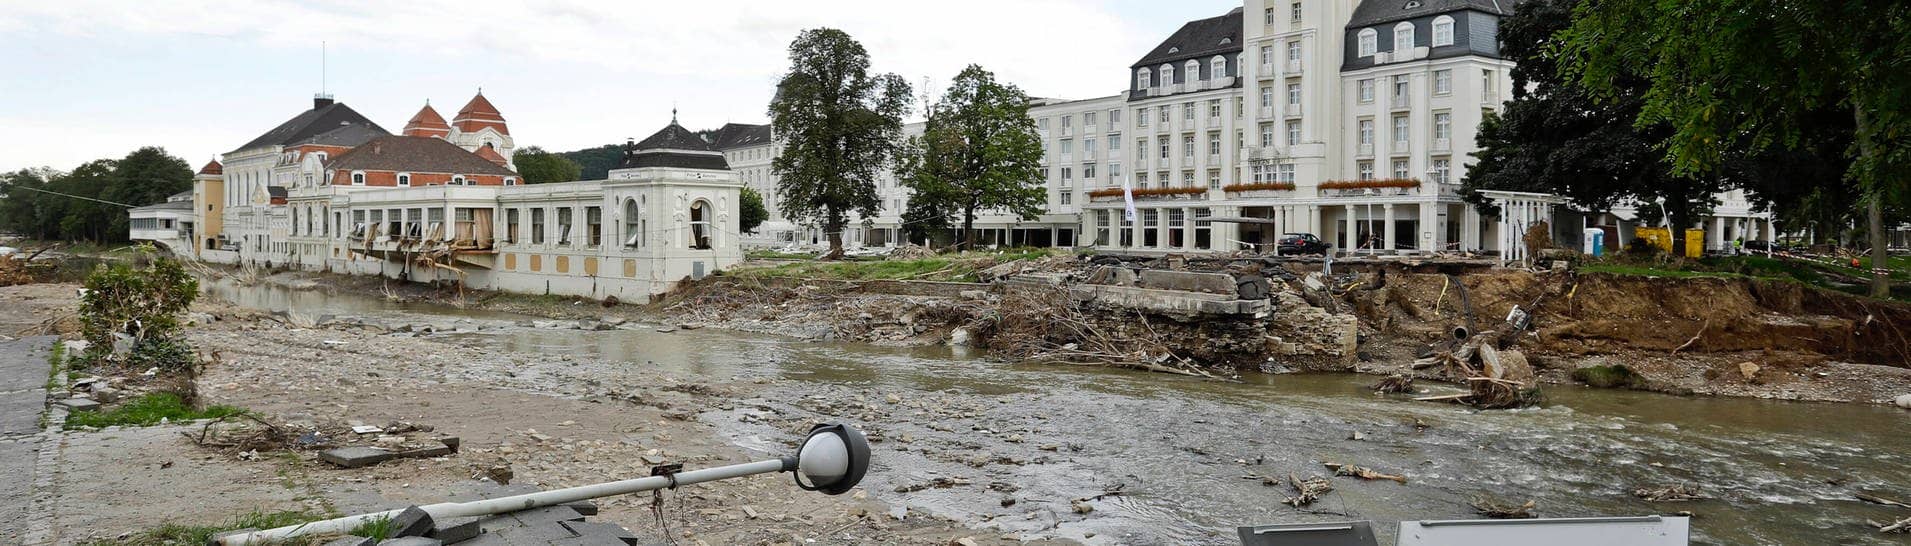 Von der Flut Mitte Juli verursachte Schäden am Flussufer in Bad Neuenahr. Im Hintergrund links das Kurhaus und rechts das Hotel am Kurpark mit seinem markantem Turm.  (Foto: IMAGO, imago images/Reiner Zensen)